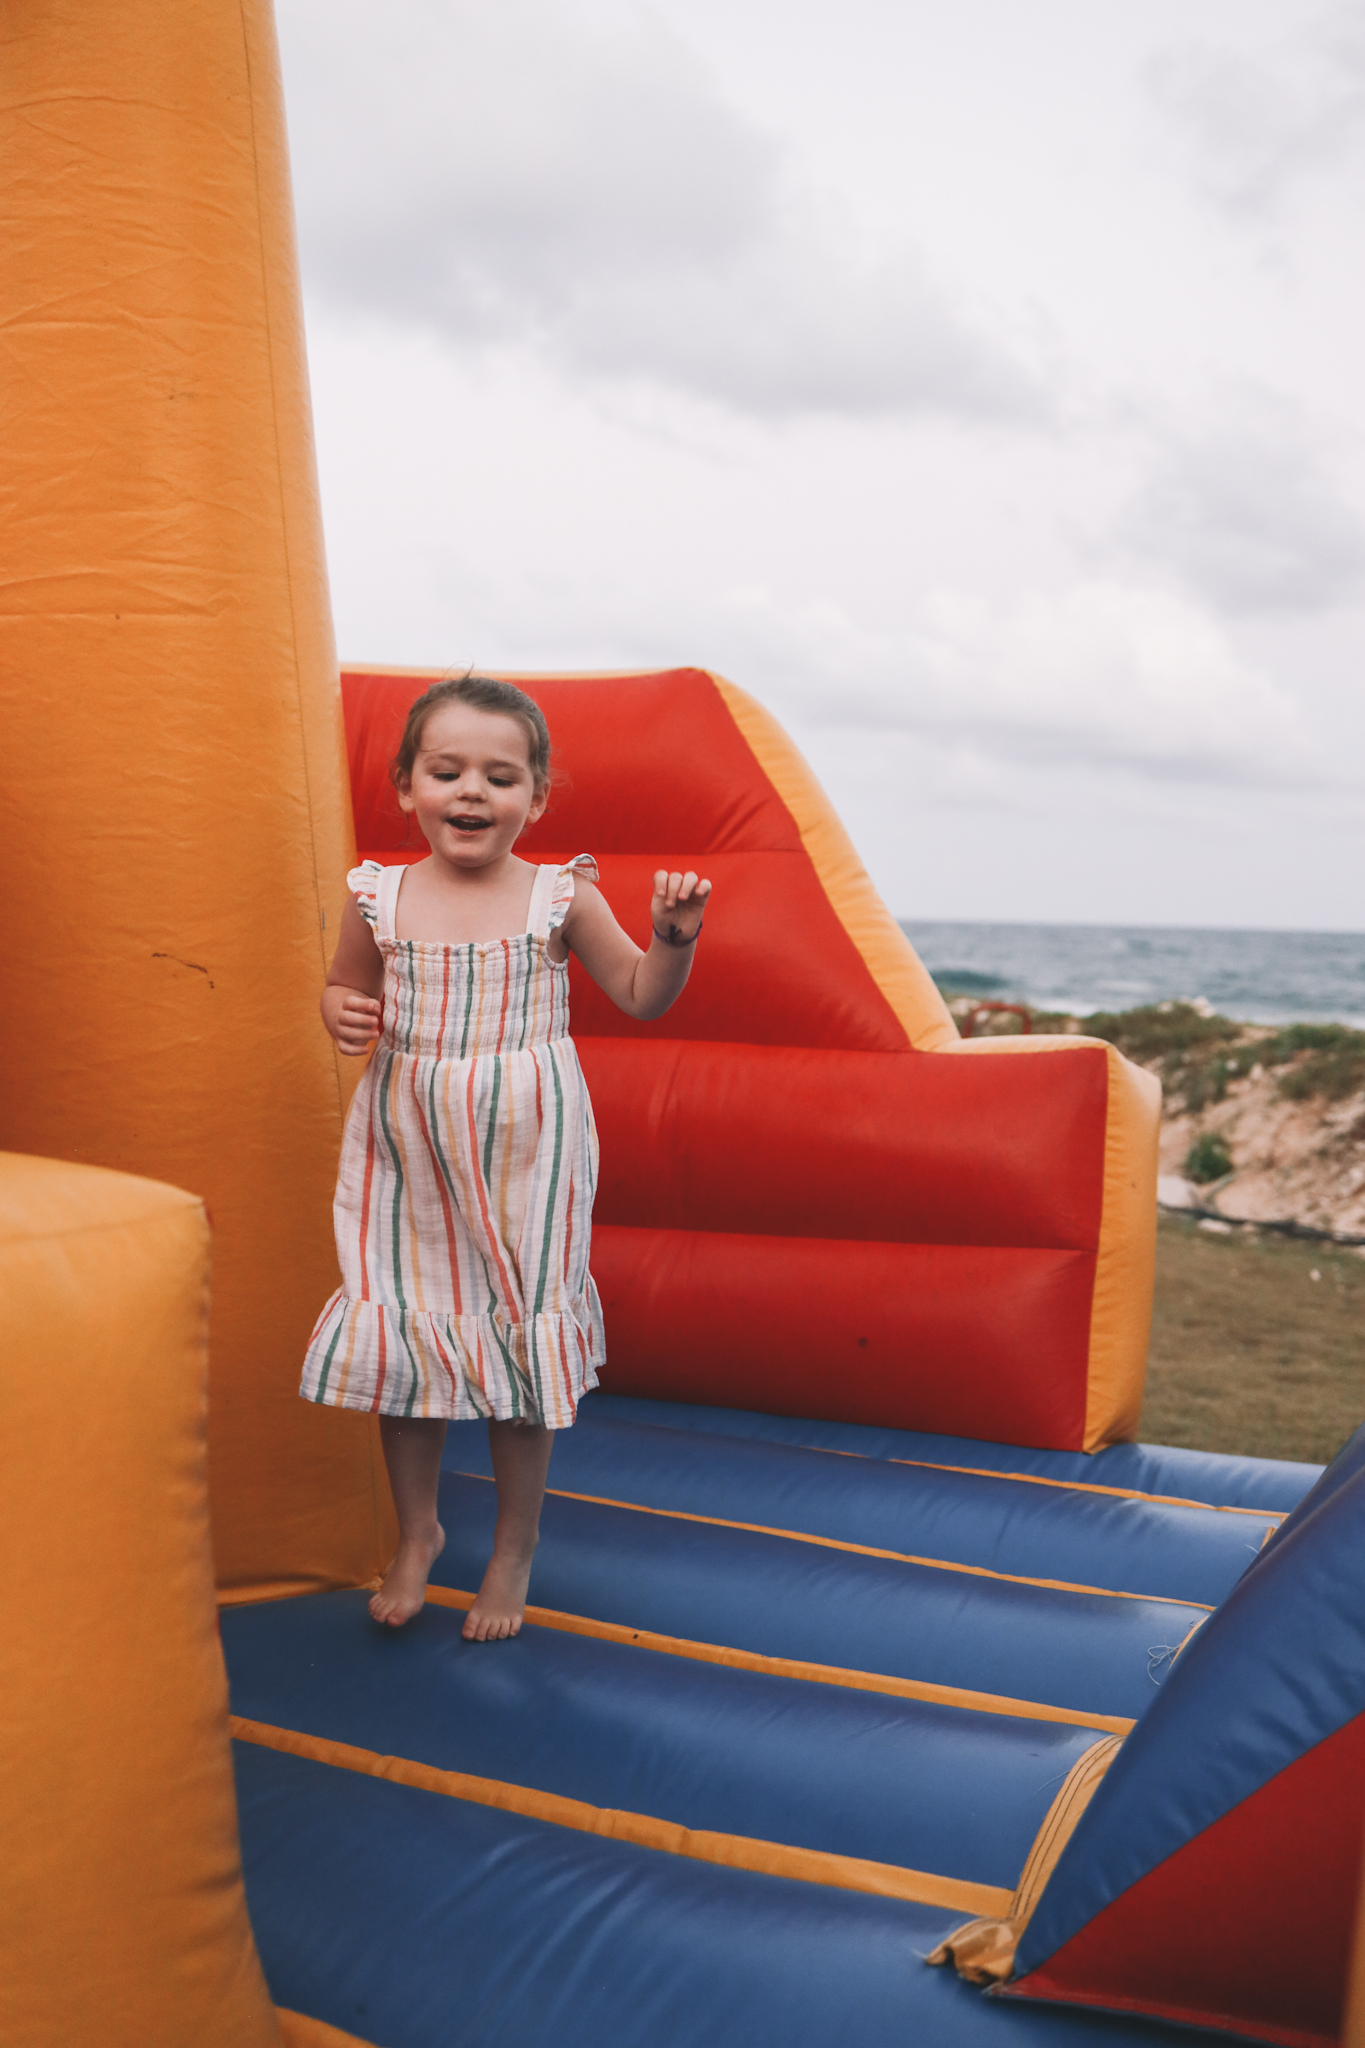 Lucy bouncy castle